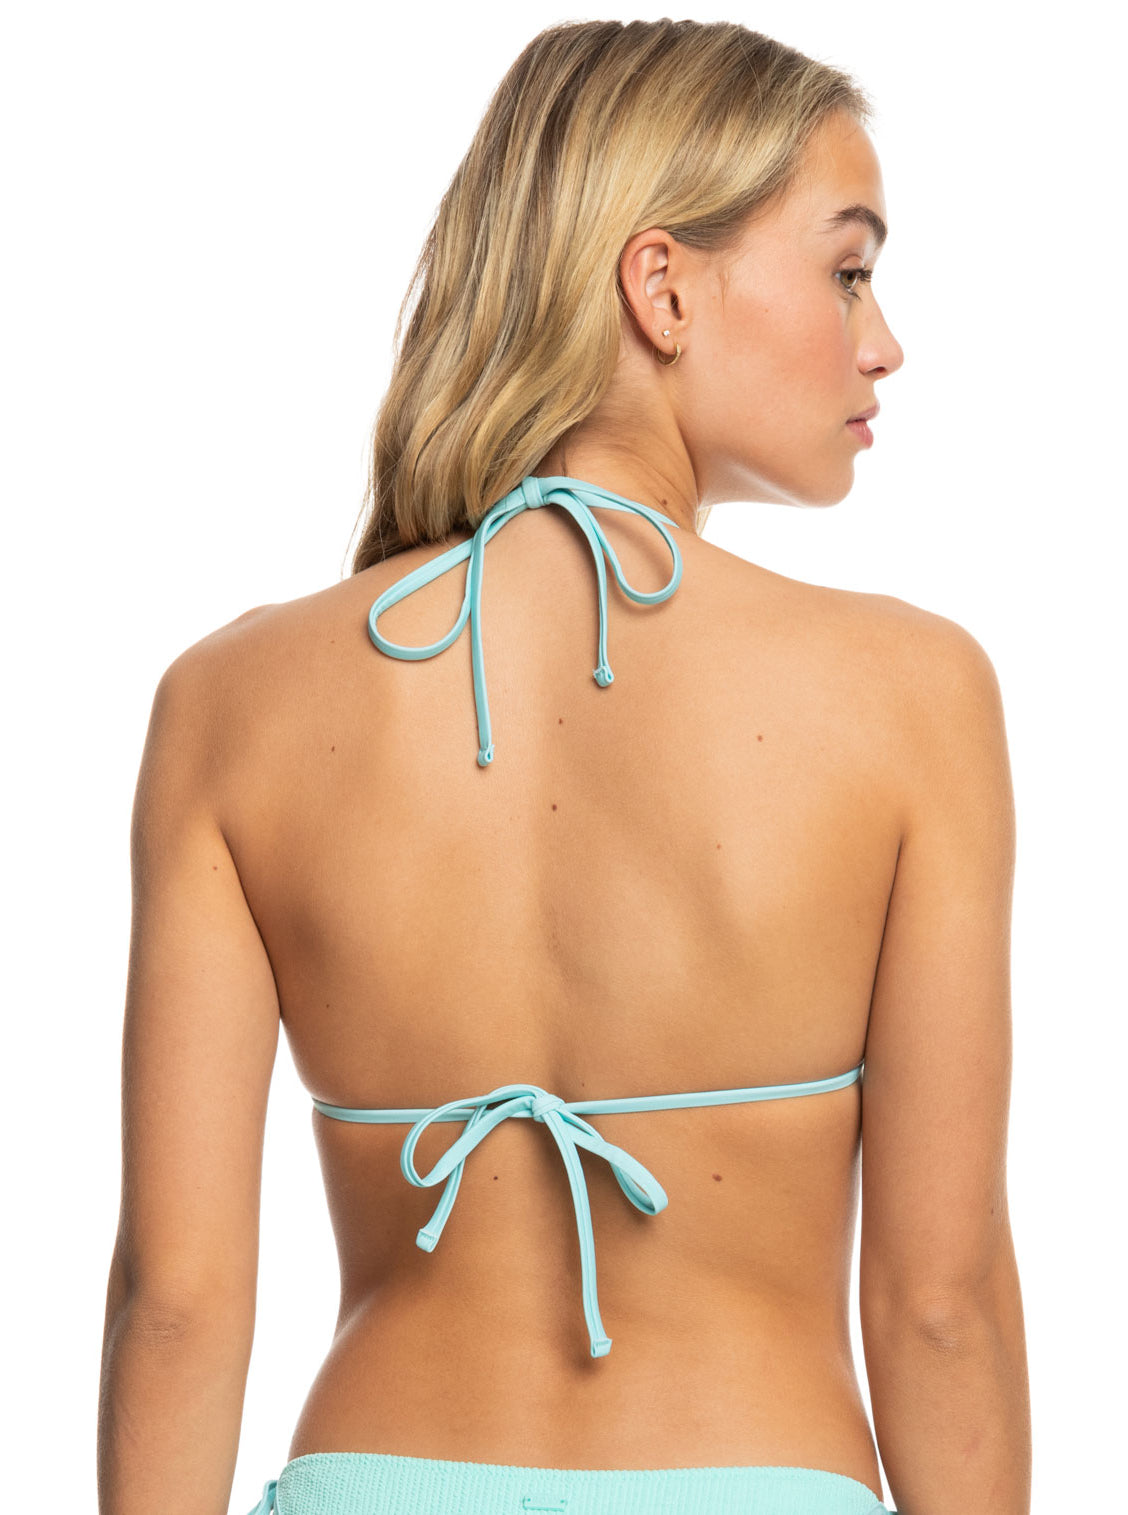 Roxy: Aruba Tiki Triangle Bikini Top